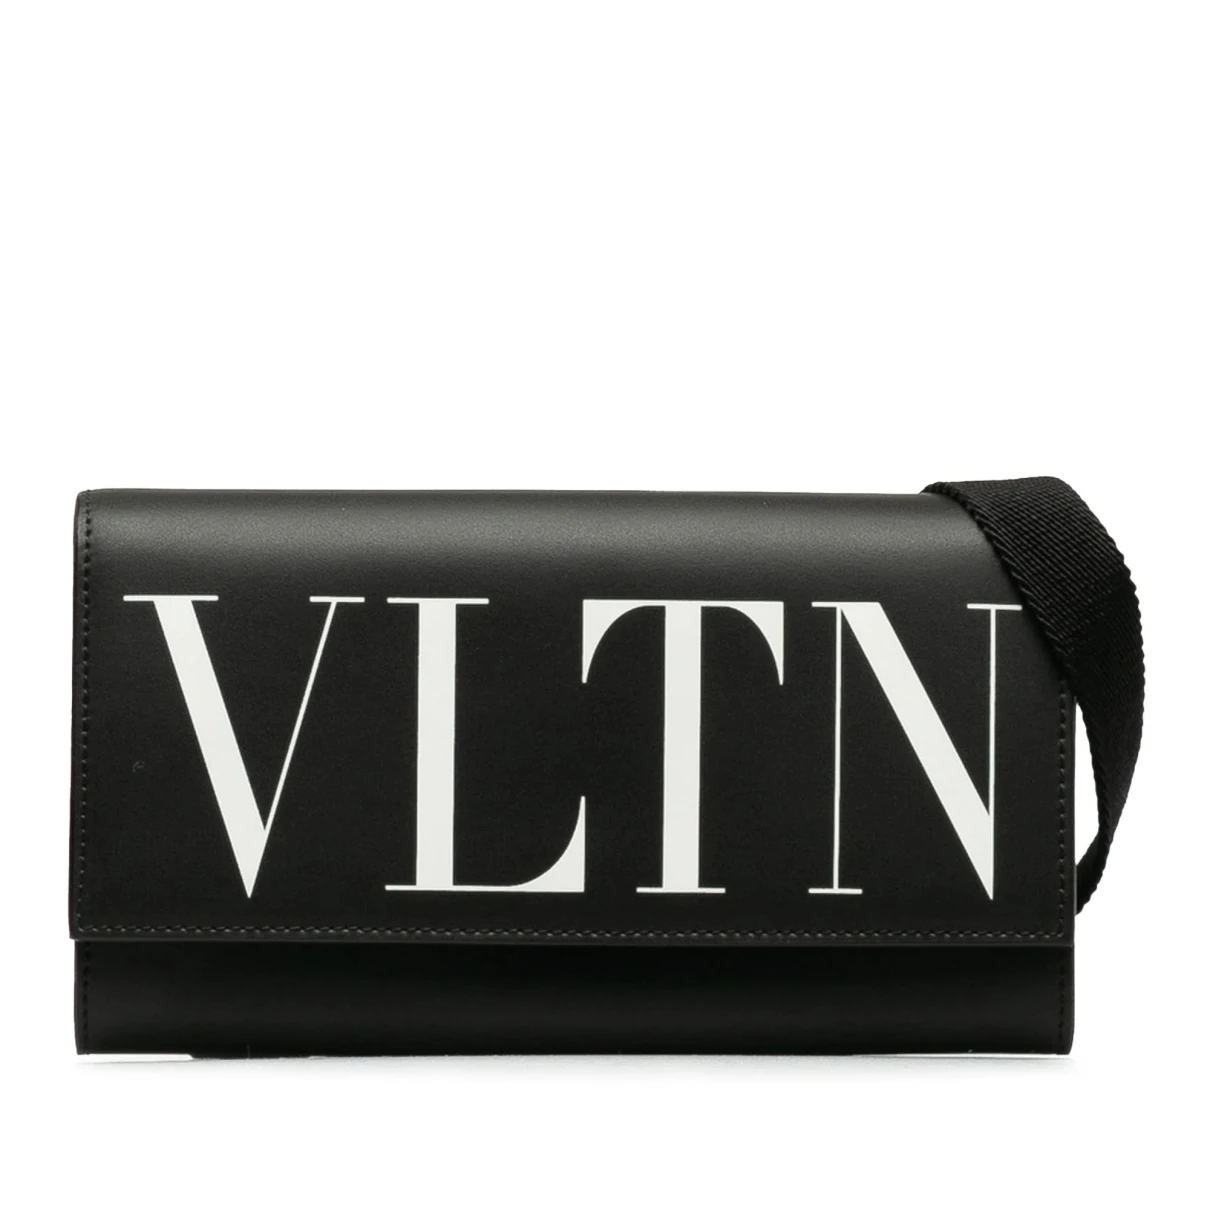 Pre-owned Valentino Garavani Leather Crossbody Bag In Black